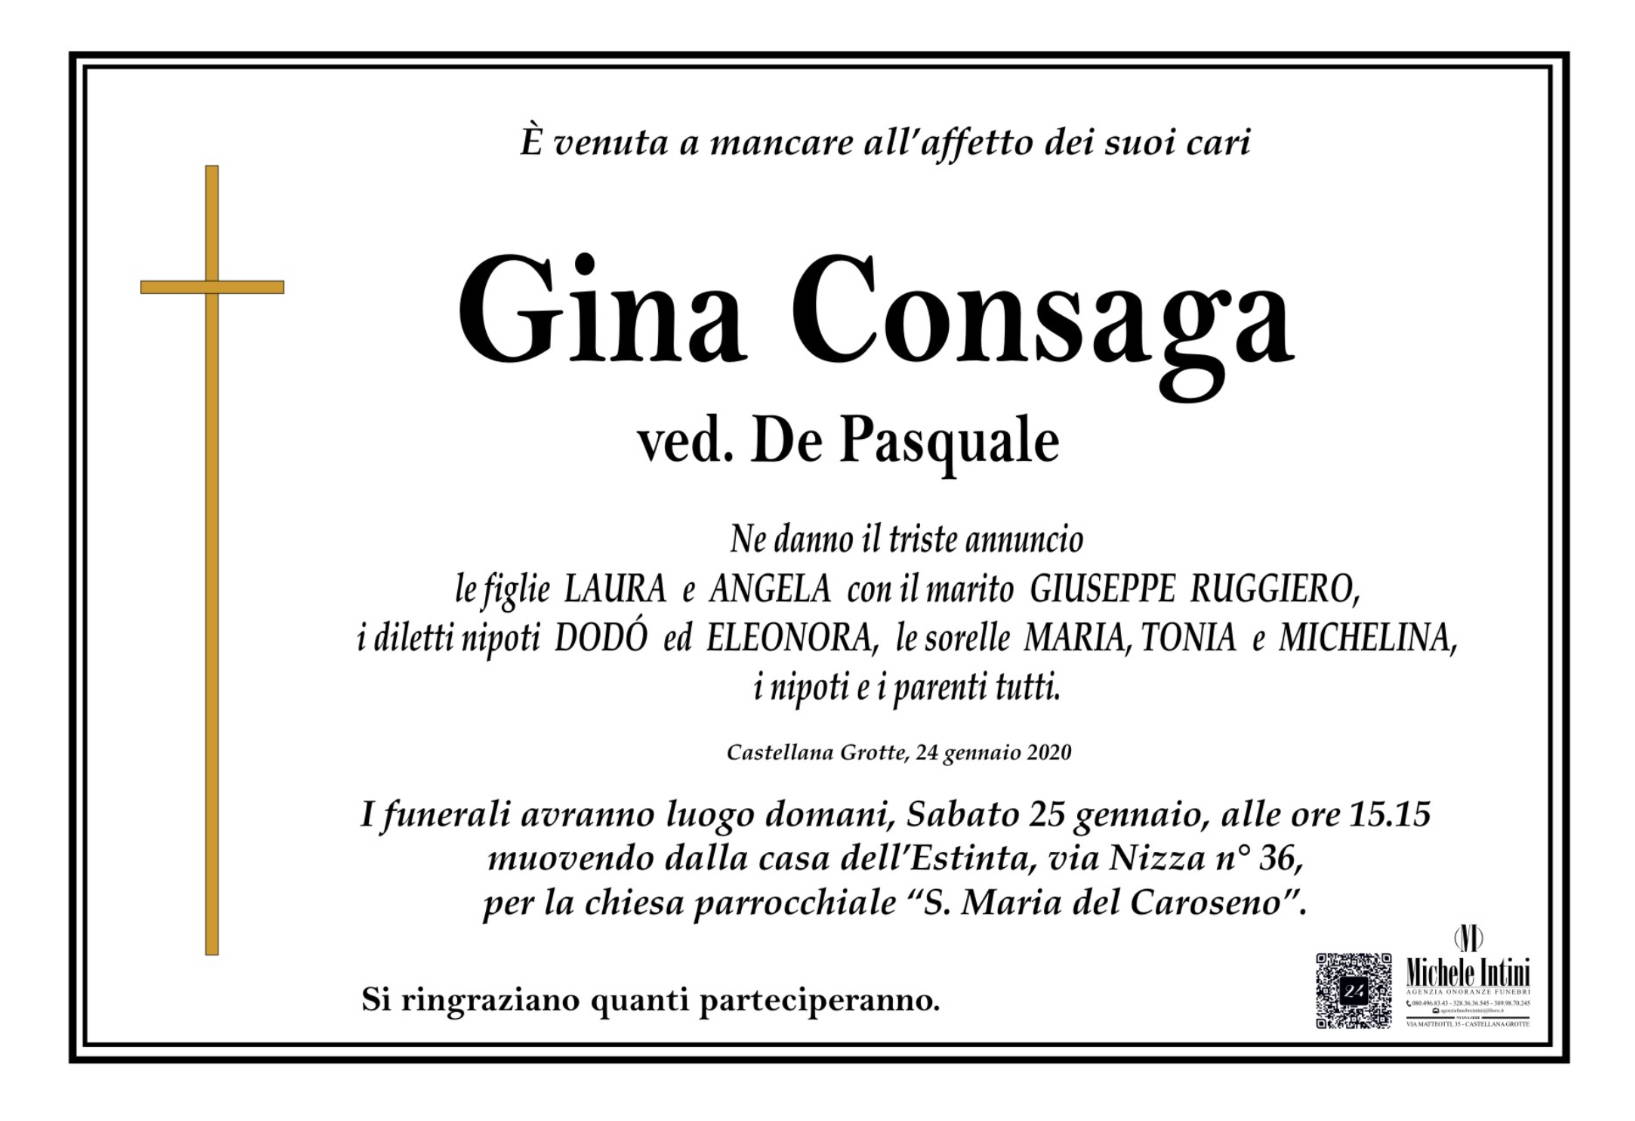 Gina Consaga